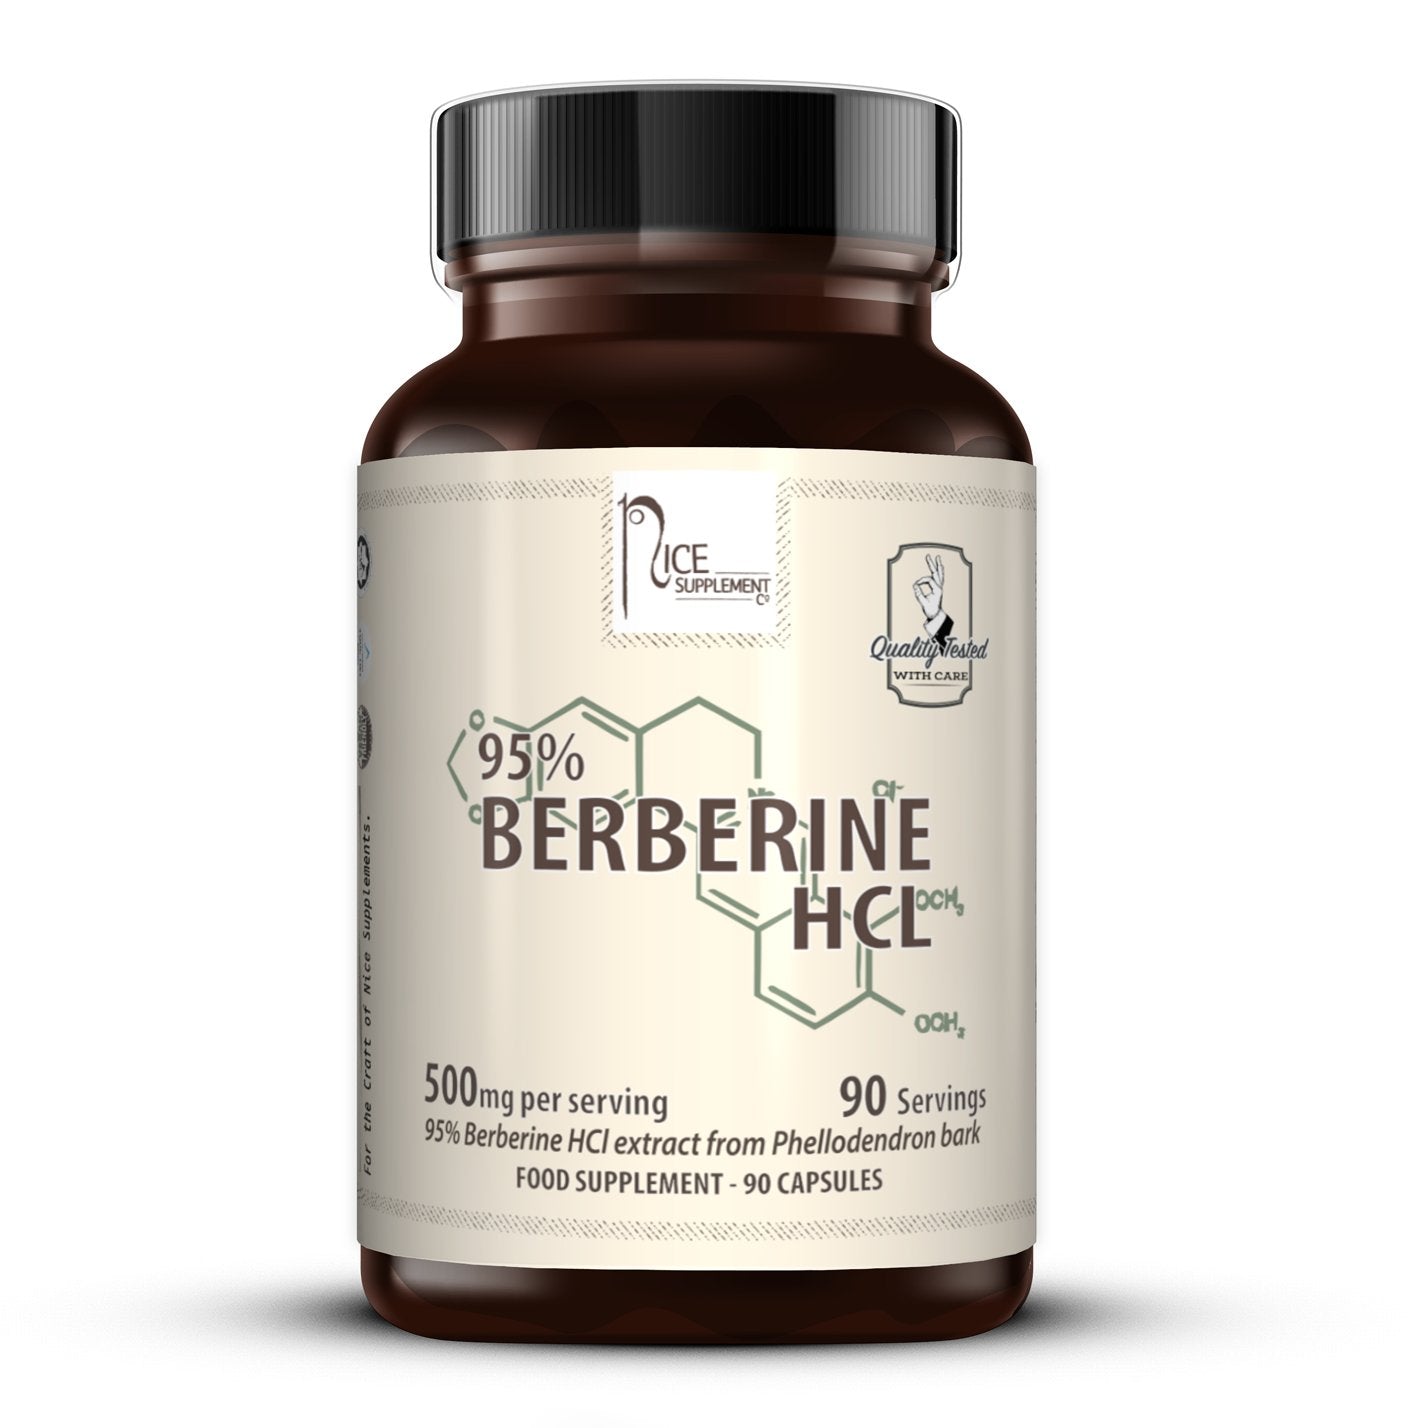 Berberine HCl - nicesupplementco